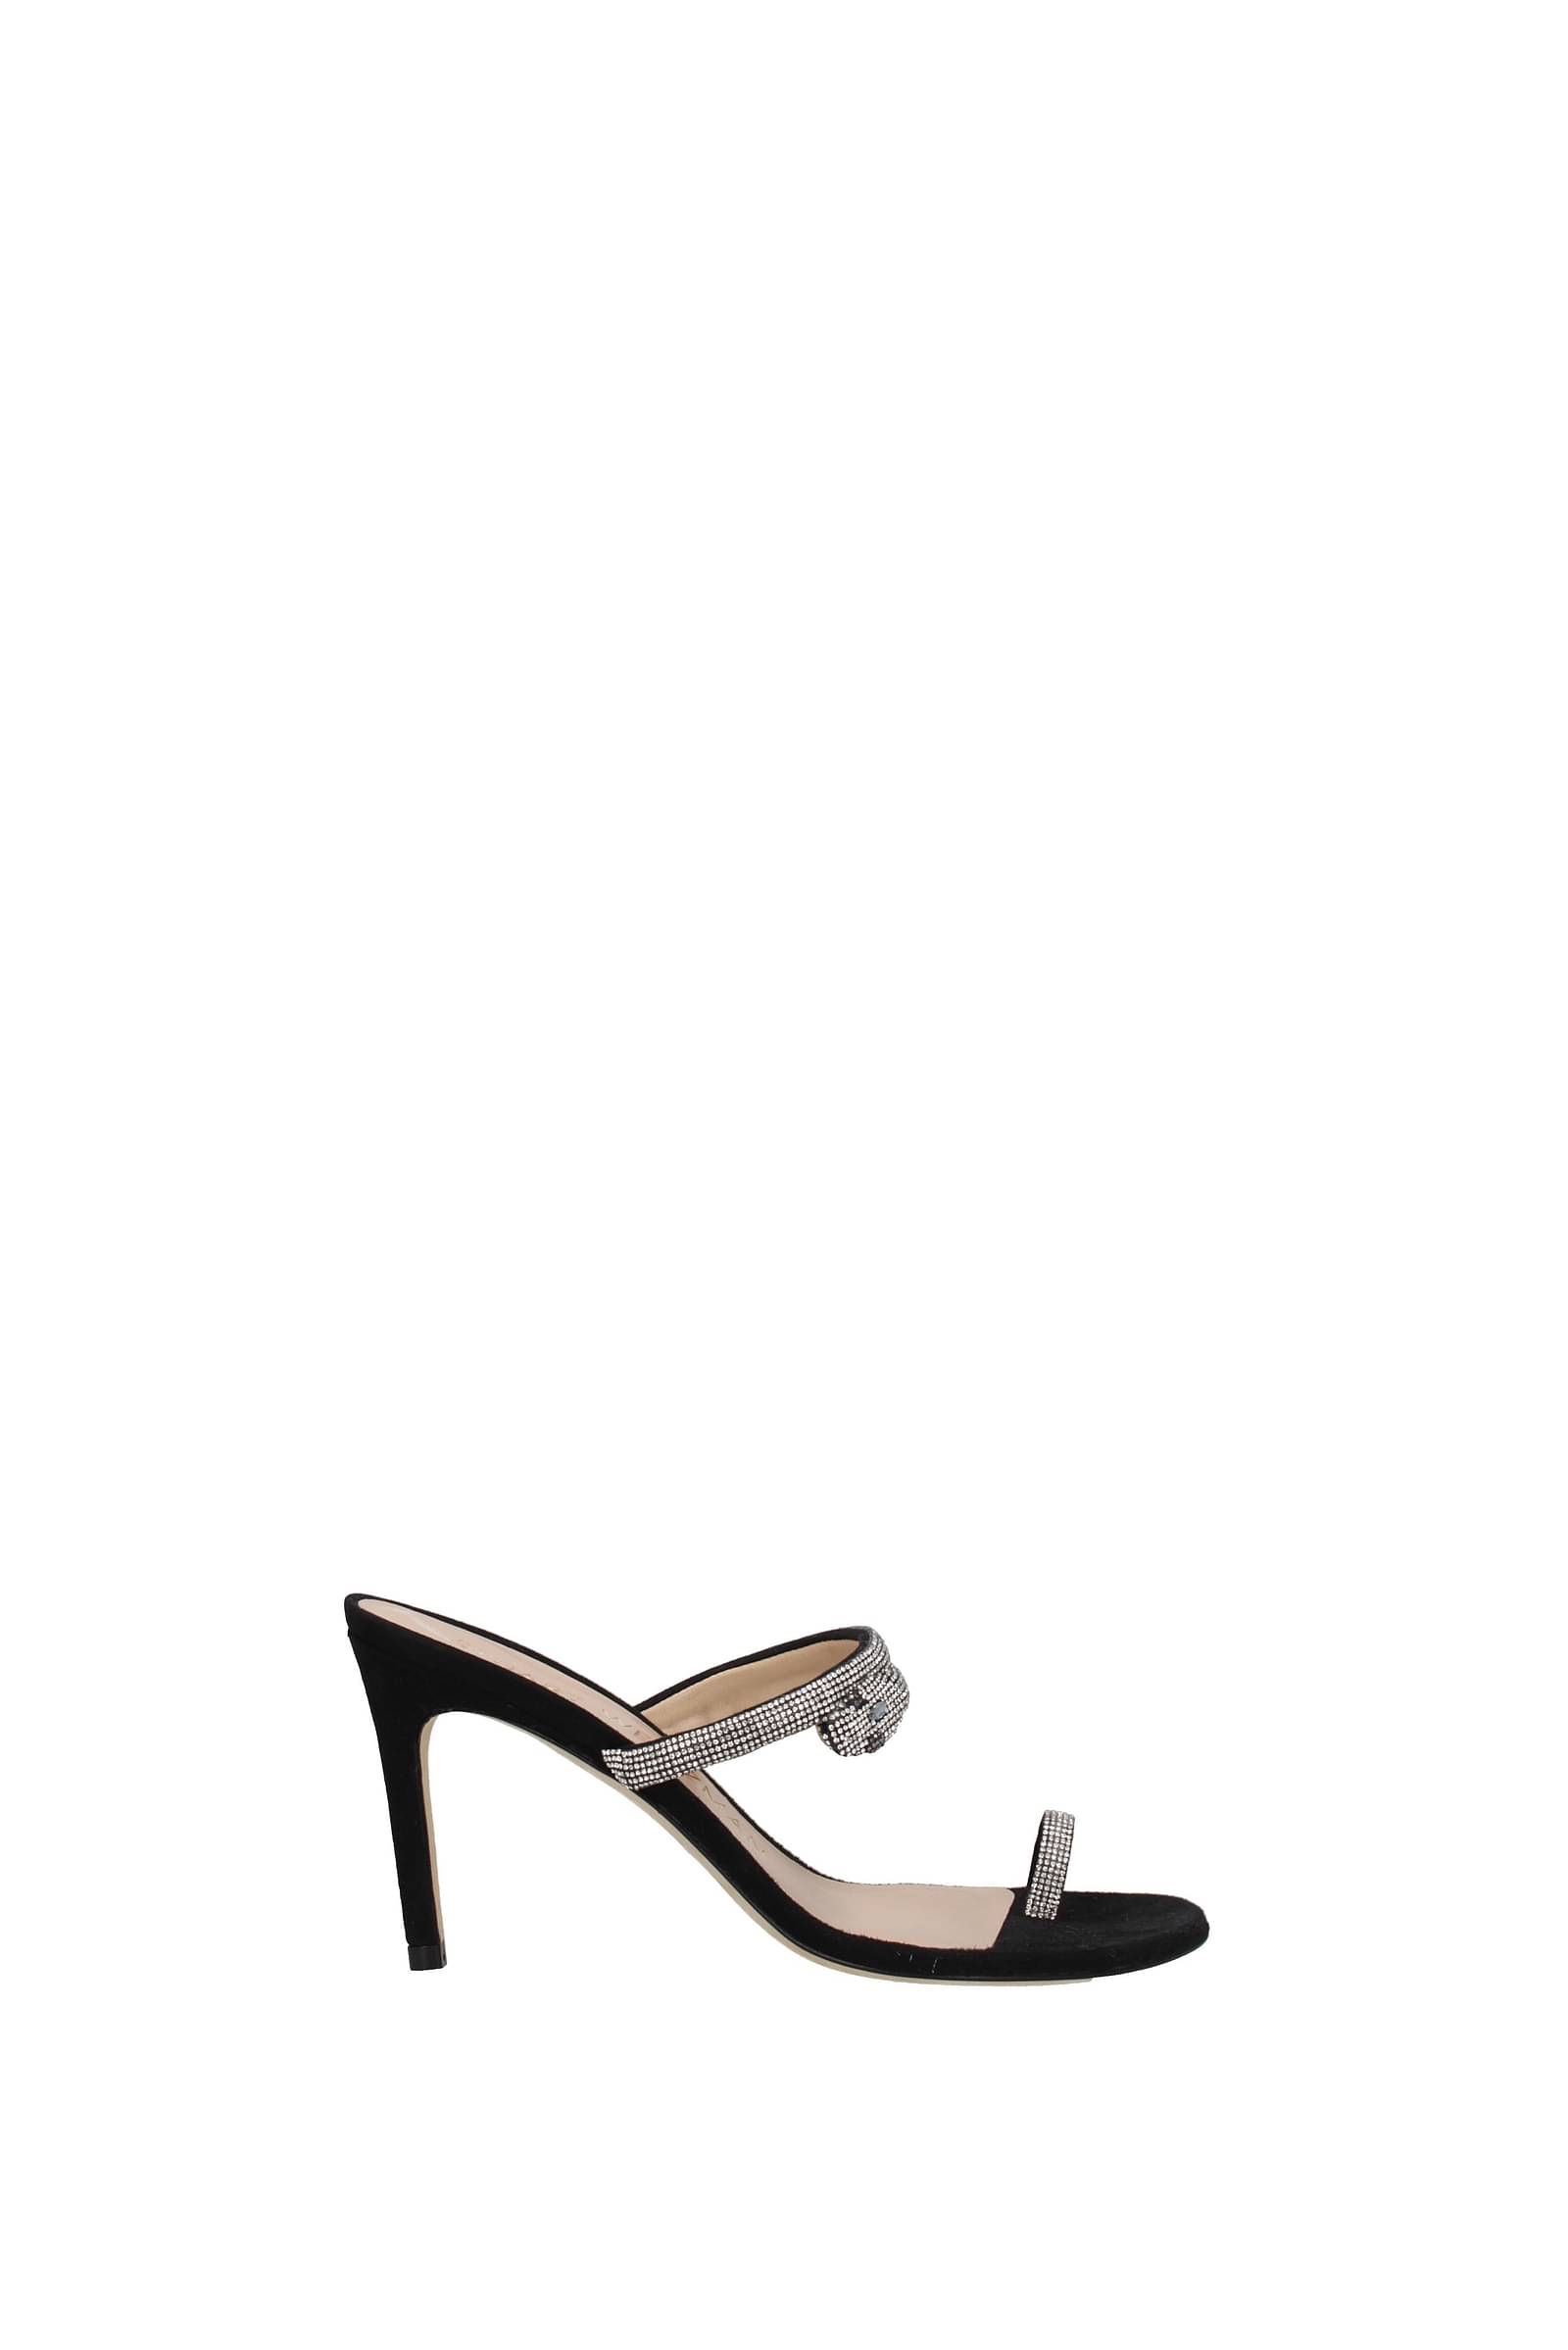 Black Suede Studio Terina Satin High Heel Sandals in Black | Lyst